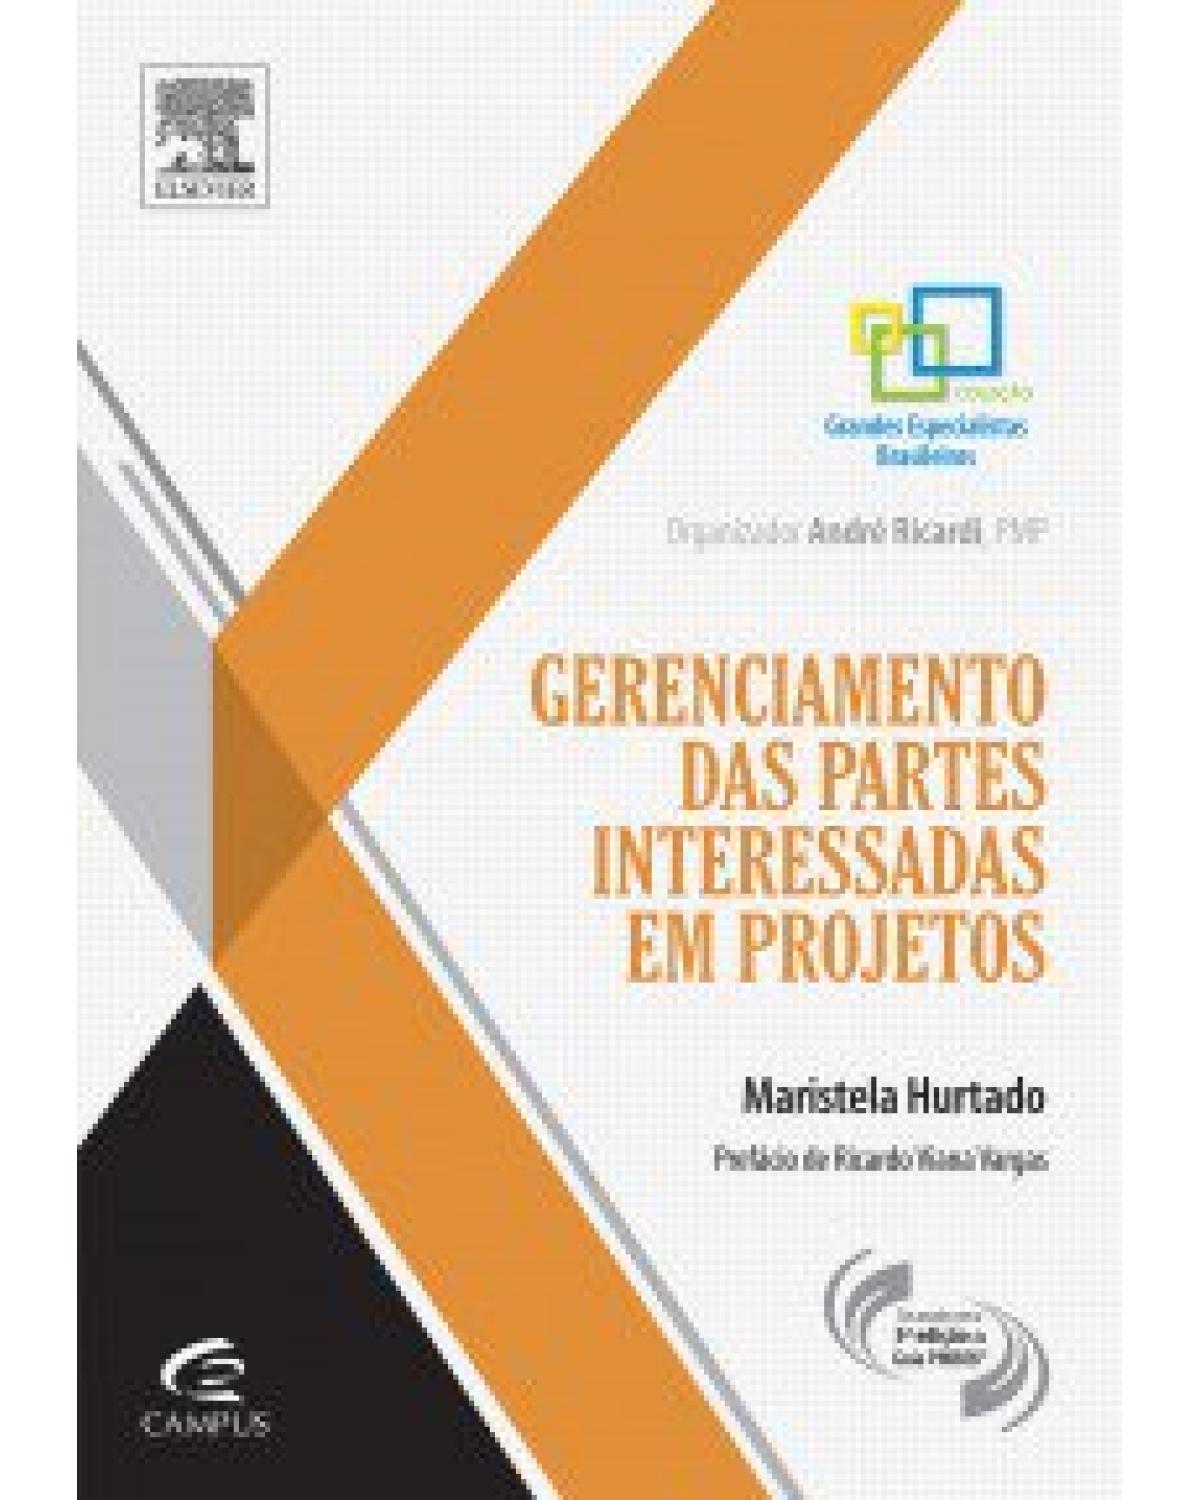 Gerenciamento de partes interessadas em projetos - 1ª Edição | 2013